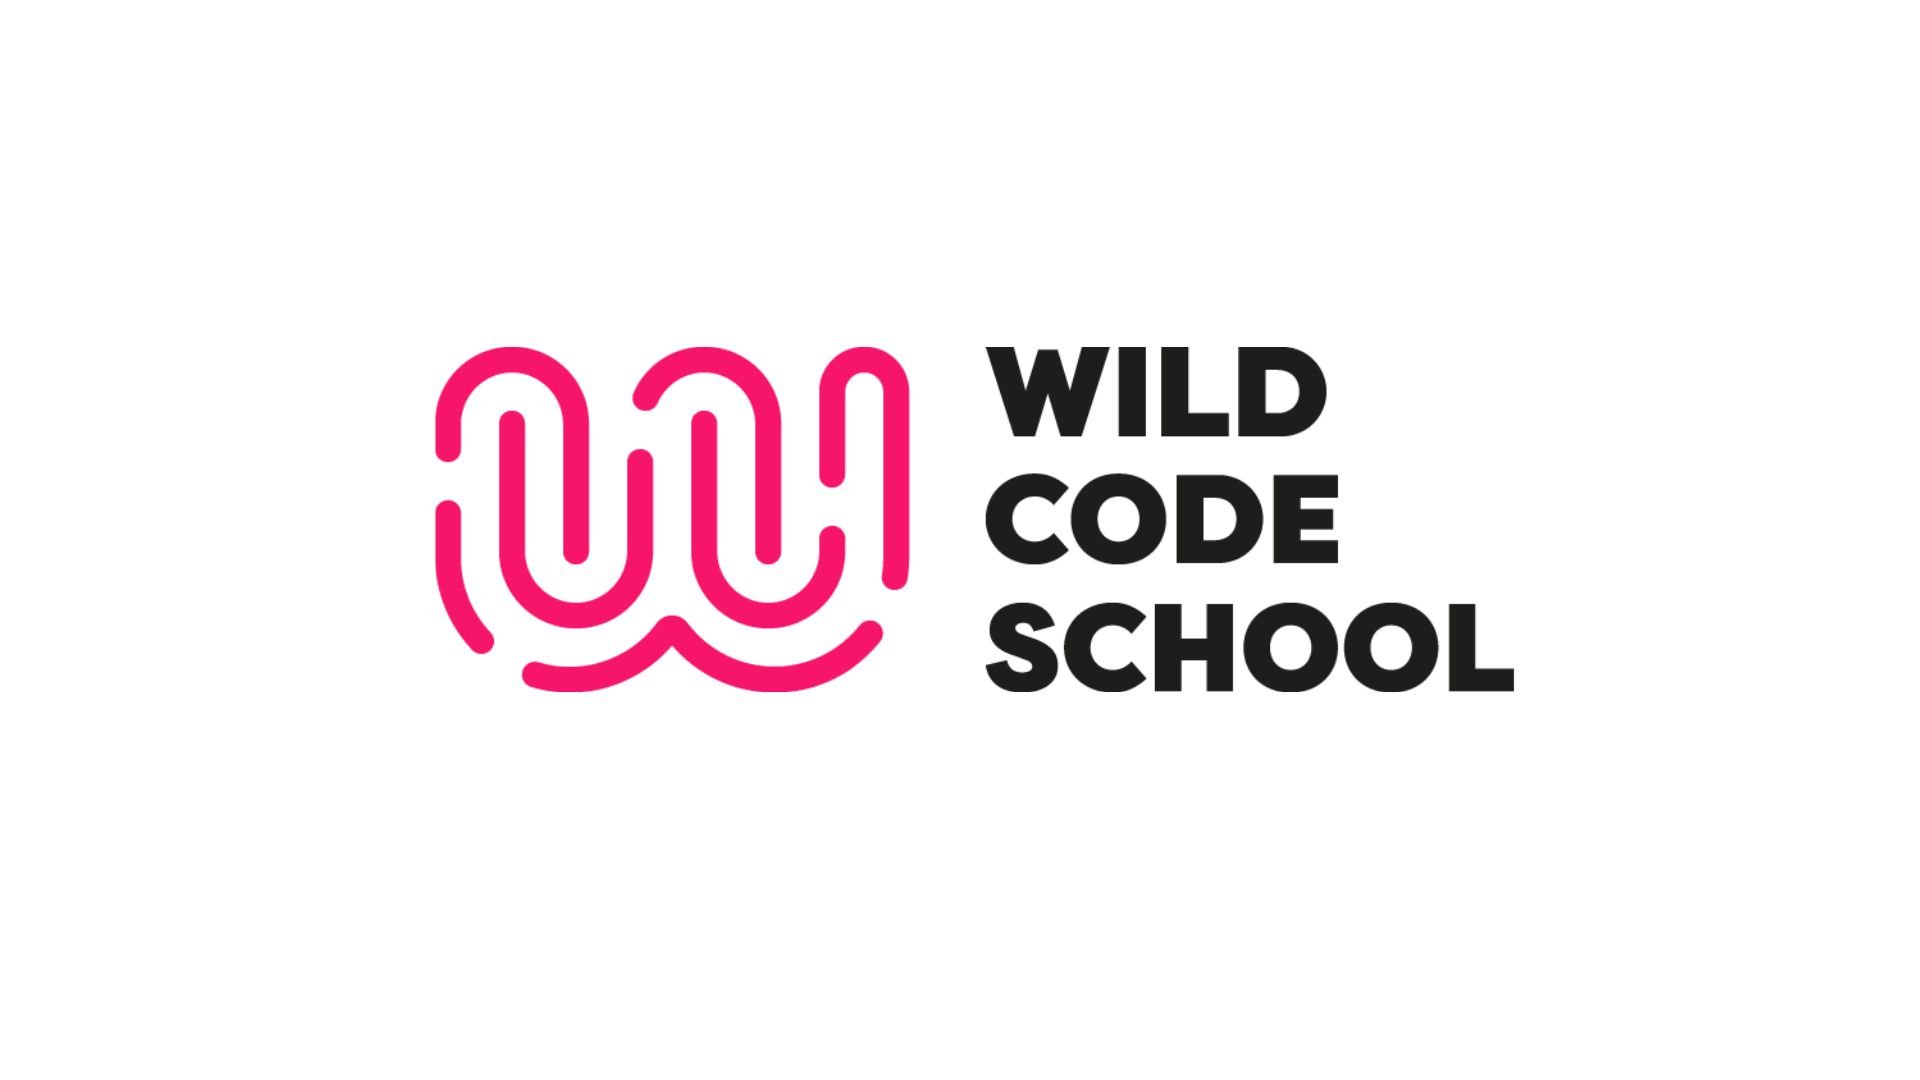 (c) Wildcodeschool.com